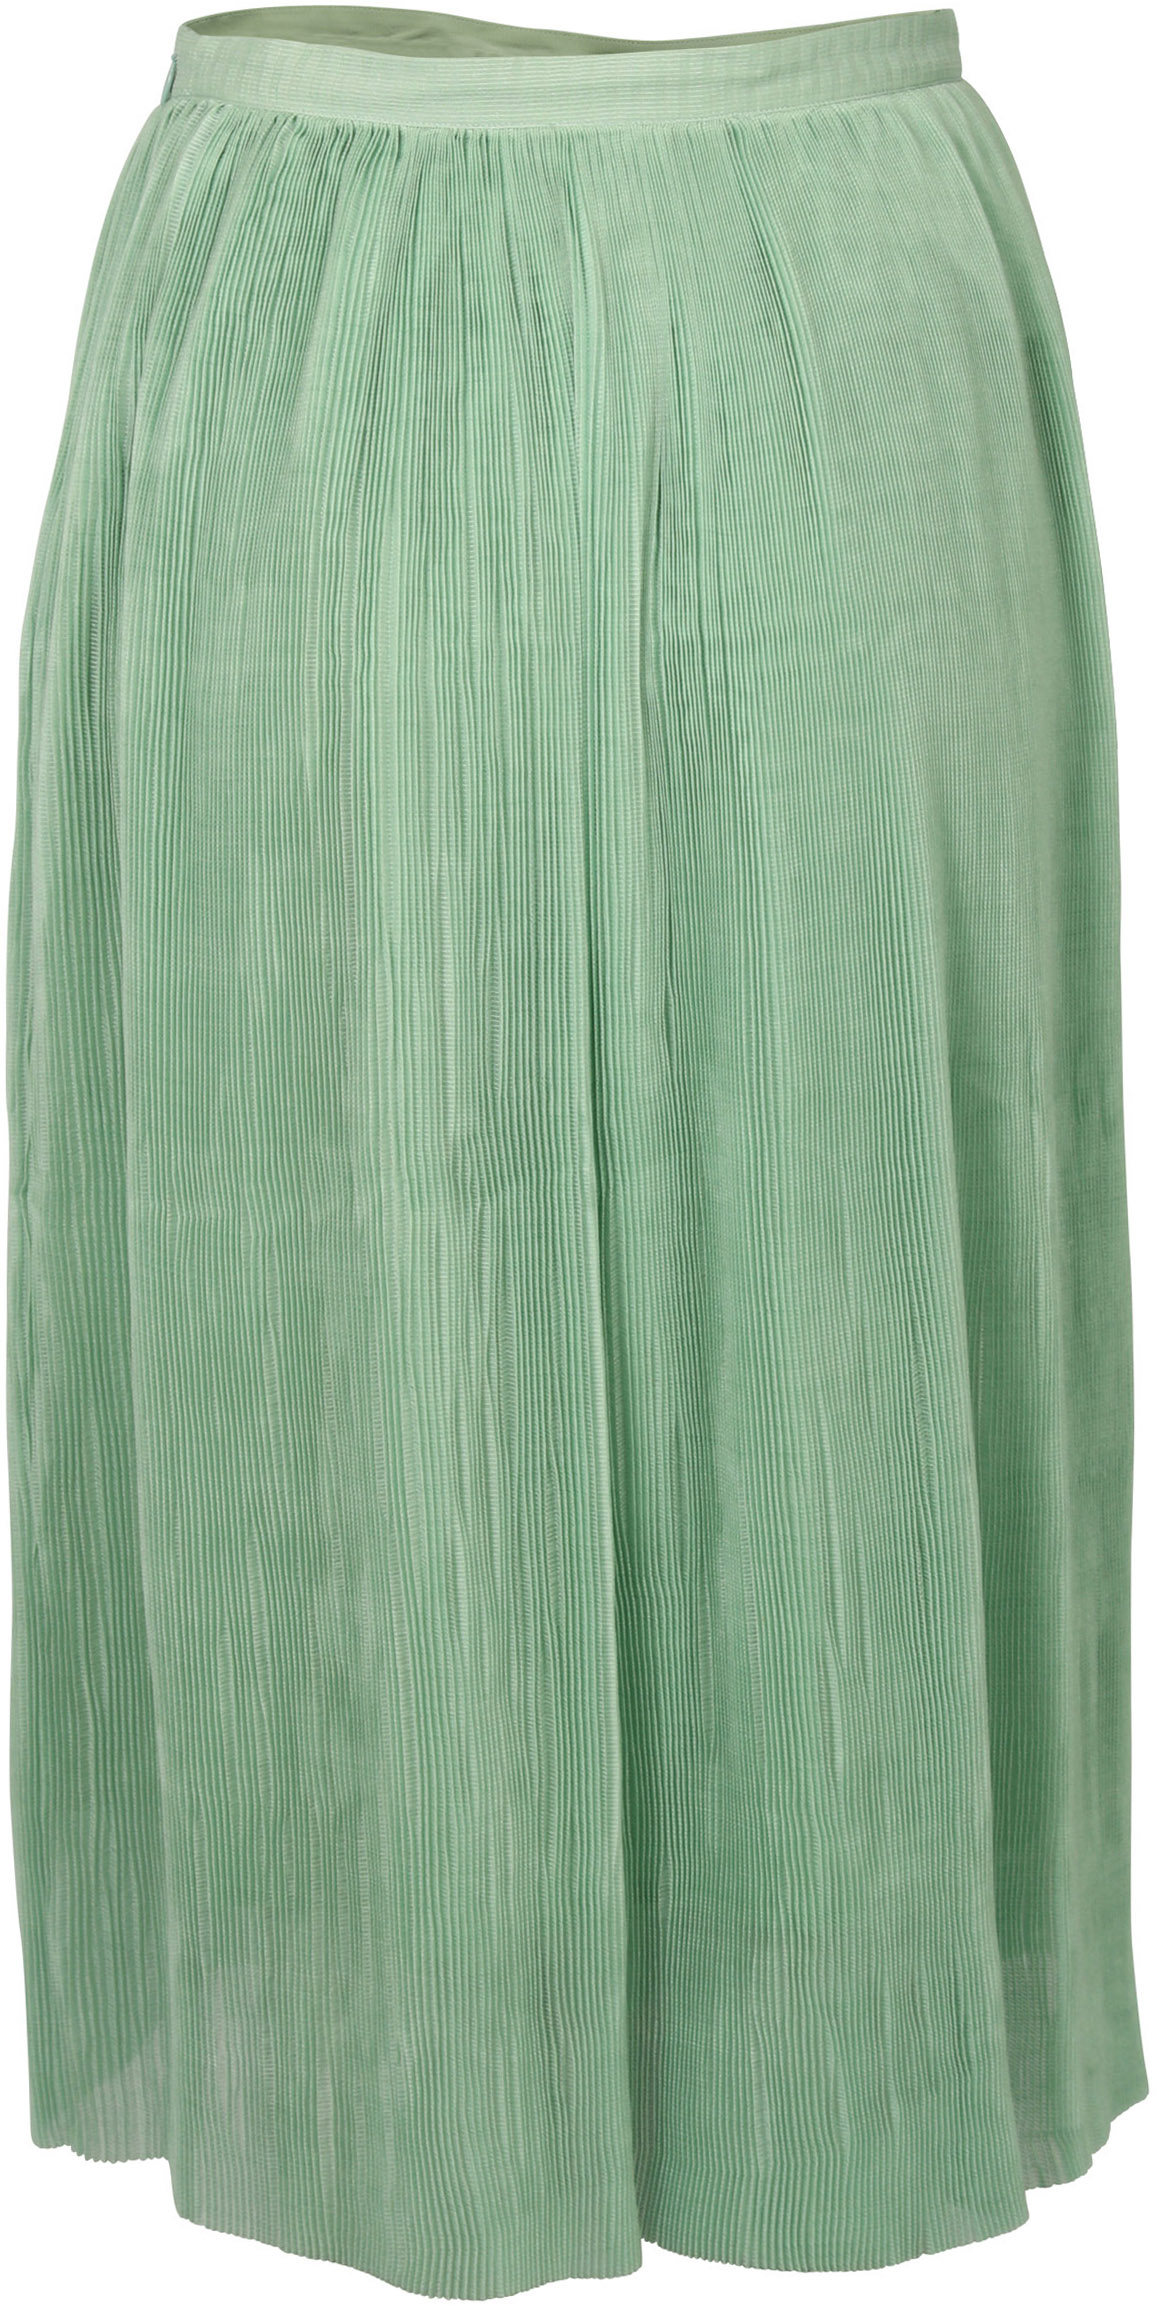 FWSS Skirt Thi Jade Green XS